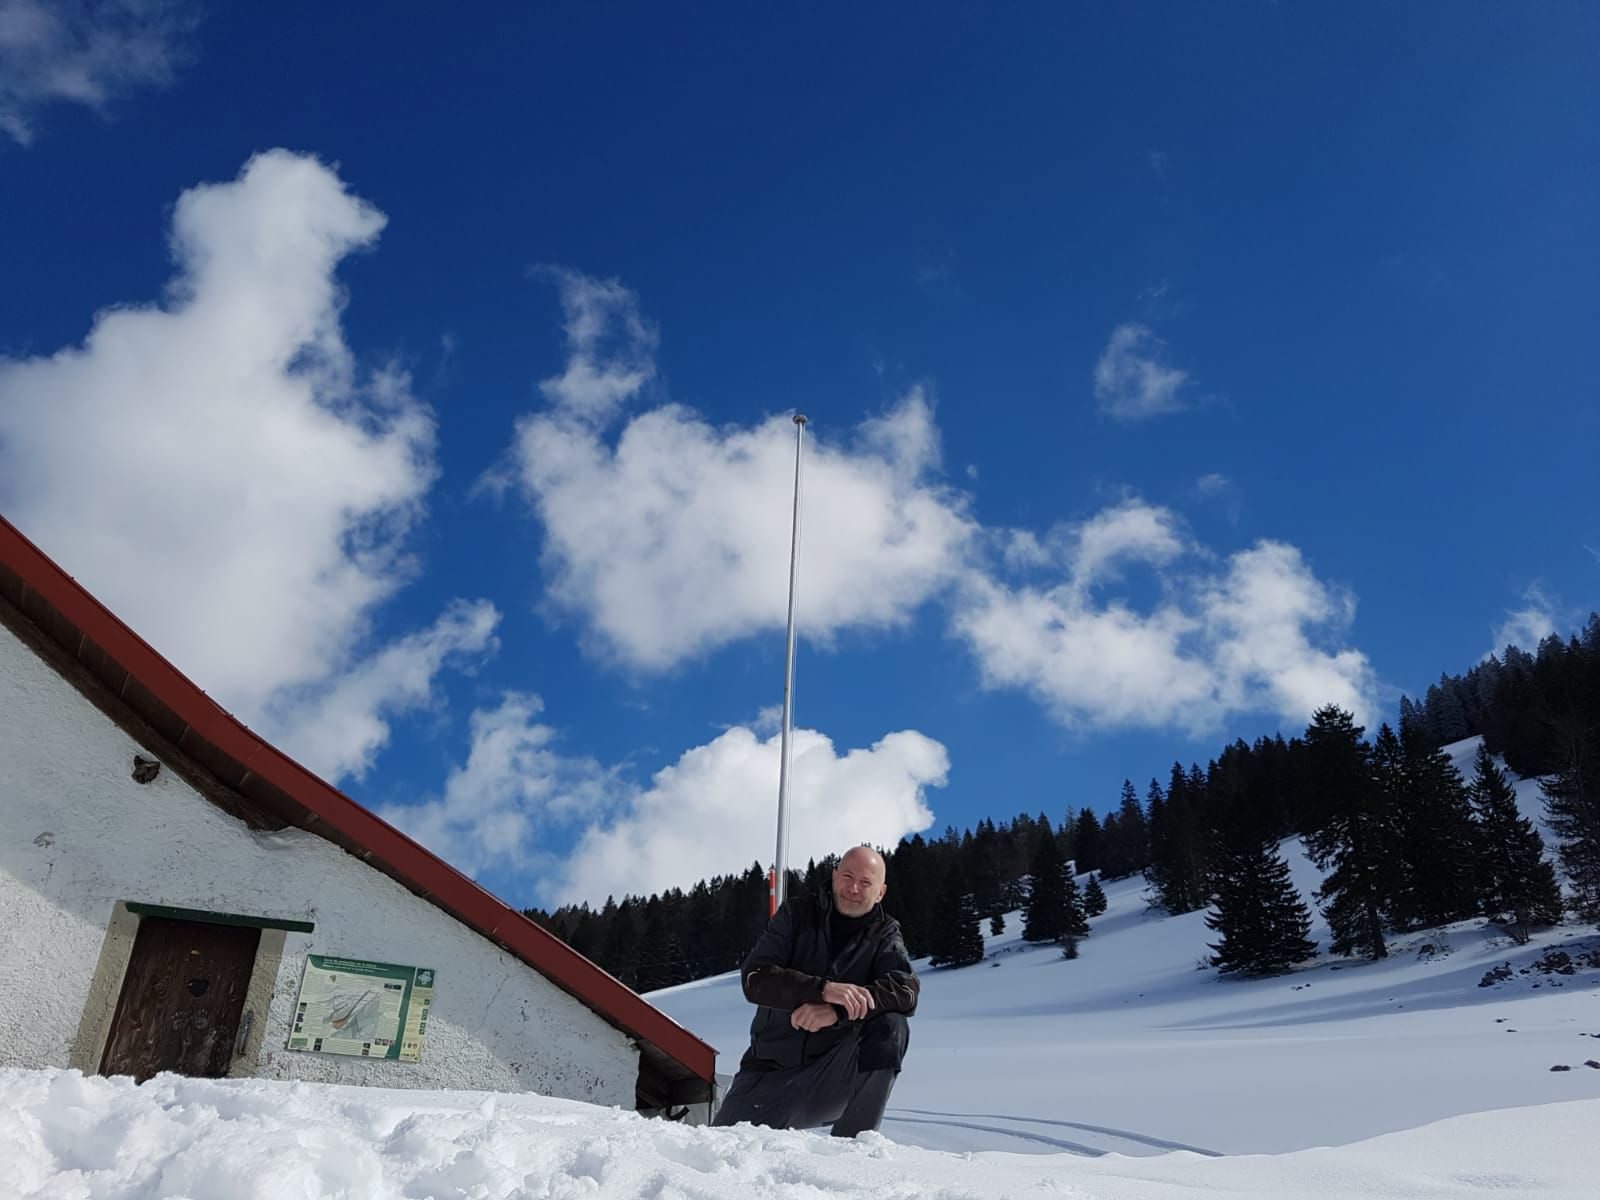 Le nouveau tenancier Bruno Cortat se réjouit d'accueillir les randonneurs au Fornel du haut, situé à 1226 mètres d'altitude.